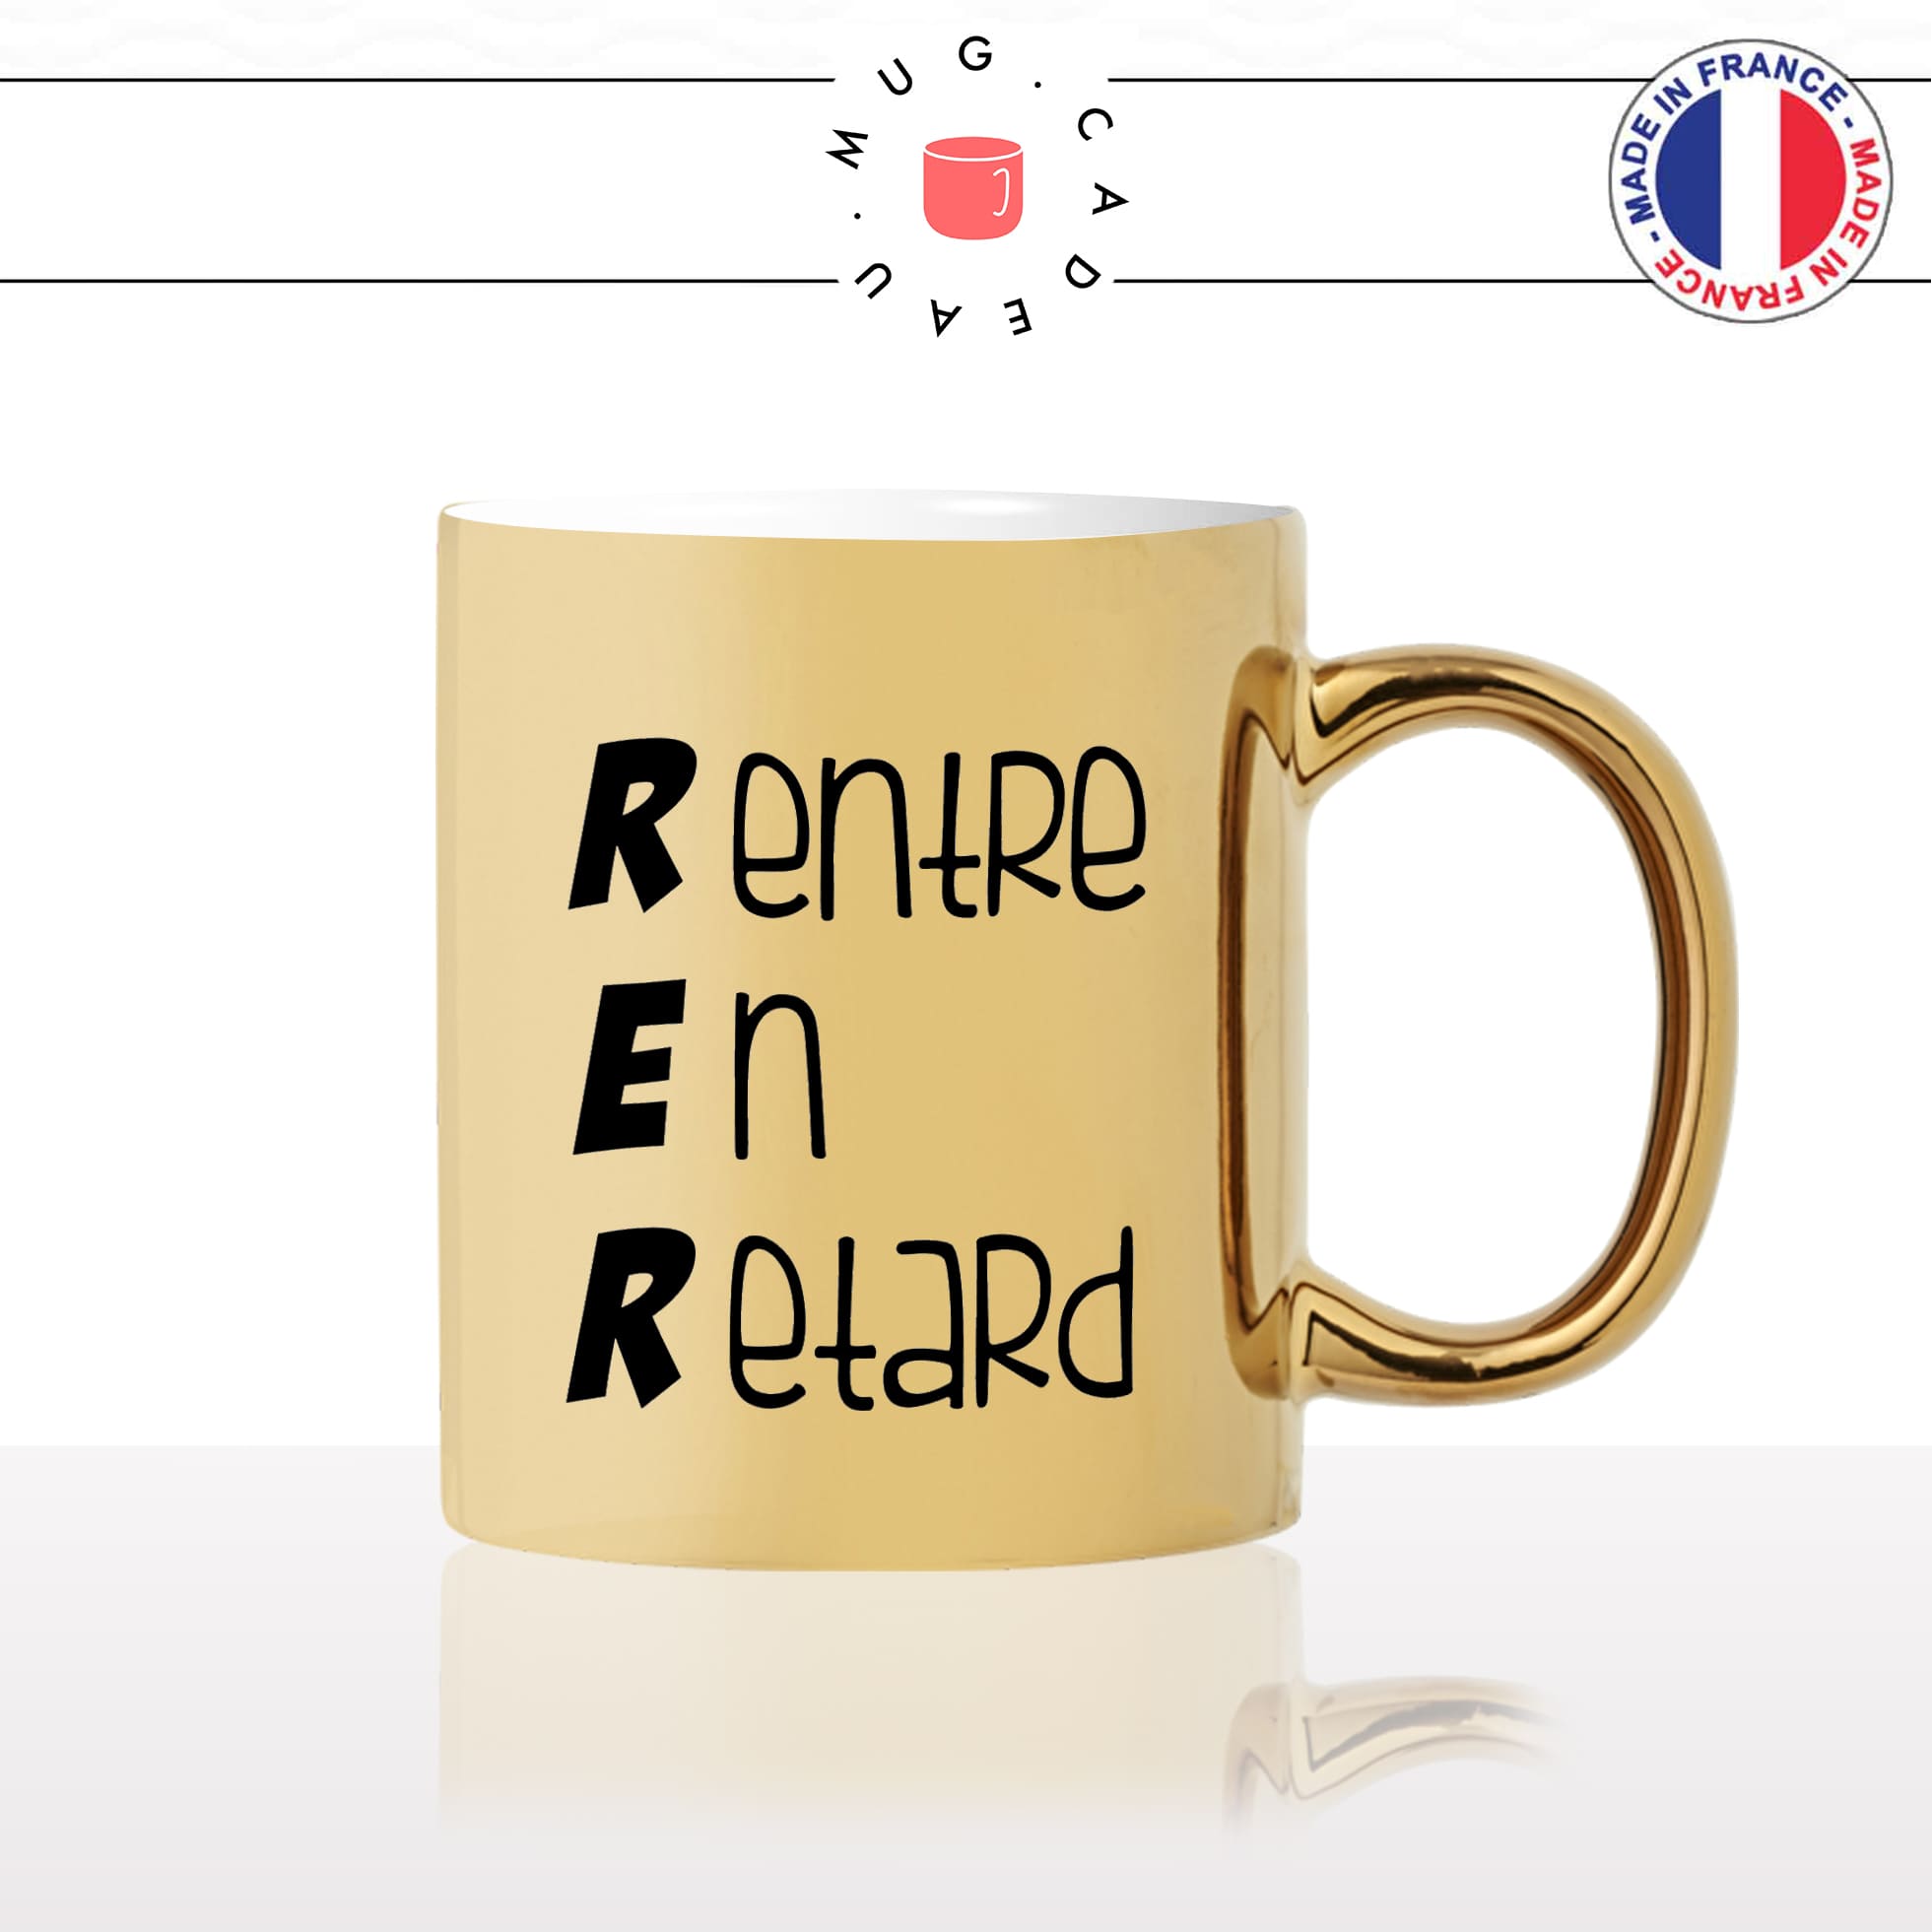 mug-tasse-or-doré-gold-unique-RER-rentre-en-retard-accronyme-metro-ville-homme-femme-parodie-humour-fun-cool-idée-cadeau-original22